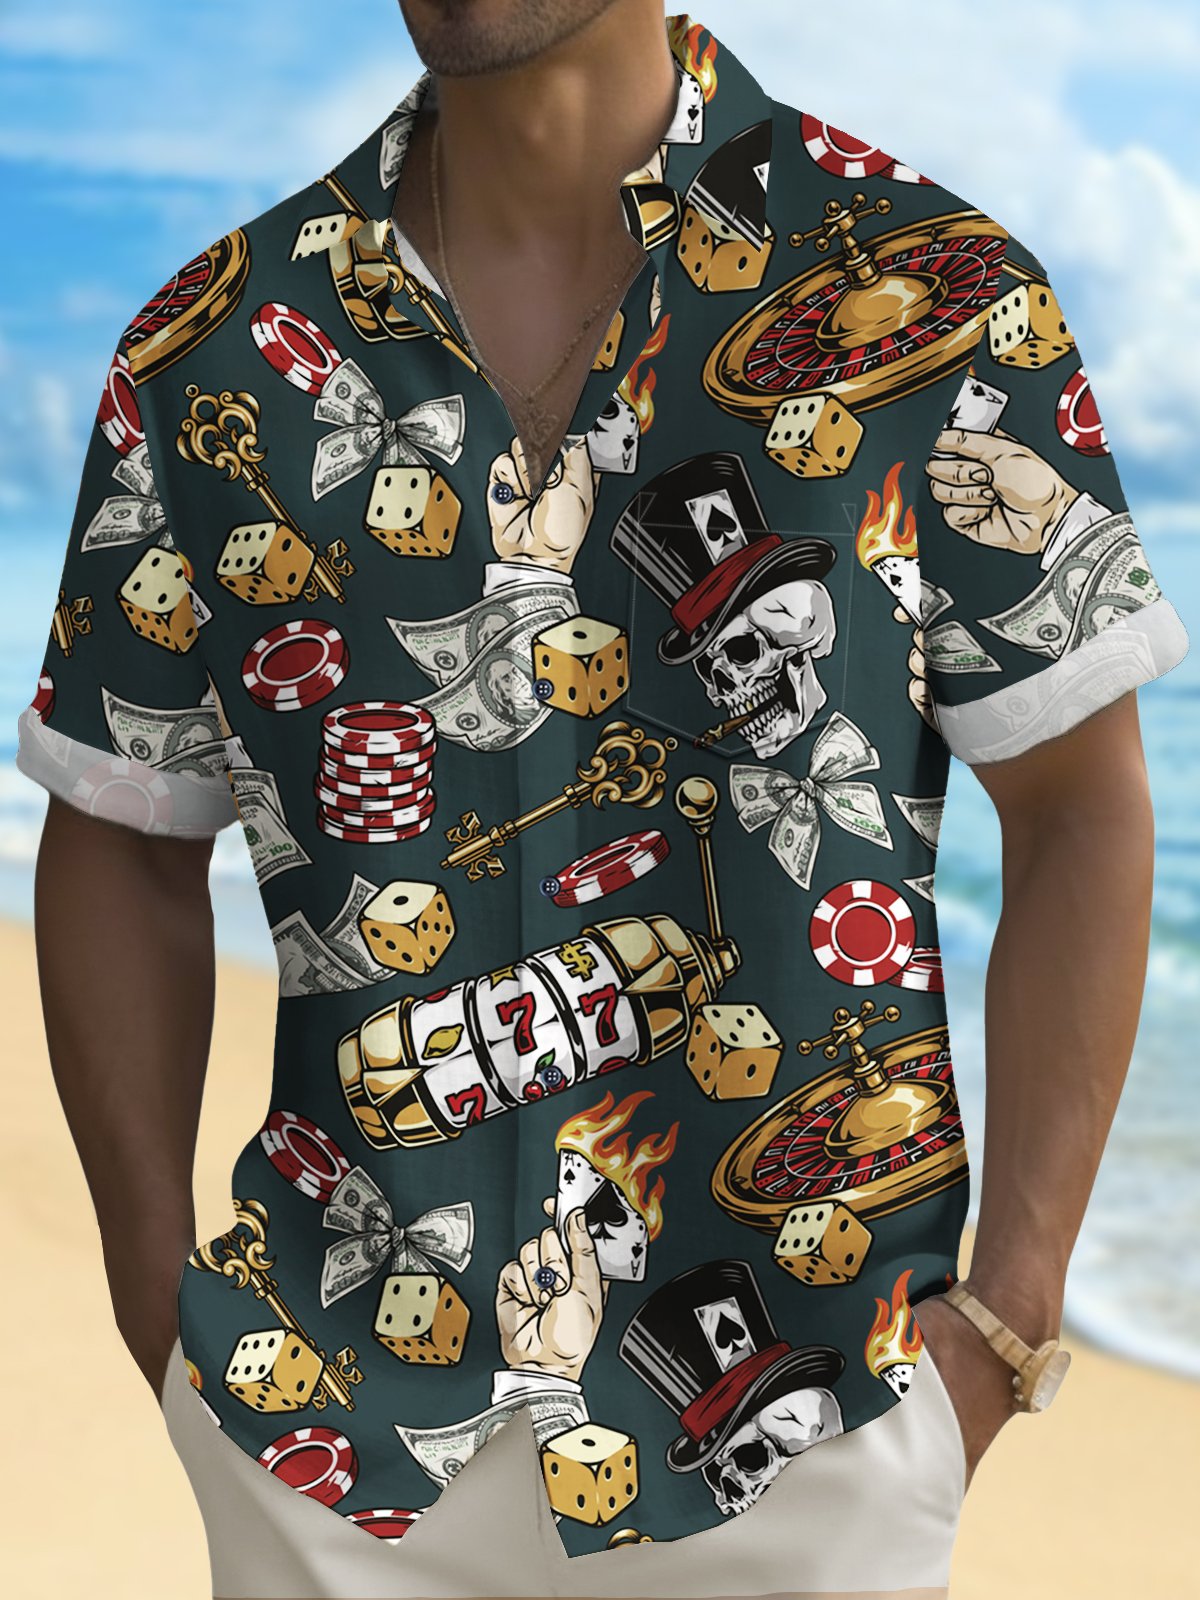 Royaura® Men's Hawaiian Shirt Las Vegas Poker Skull Pocket Camping Shirt